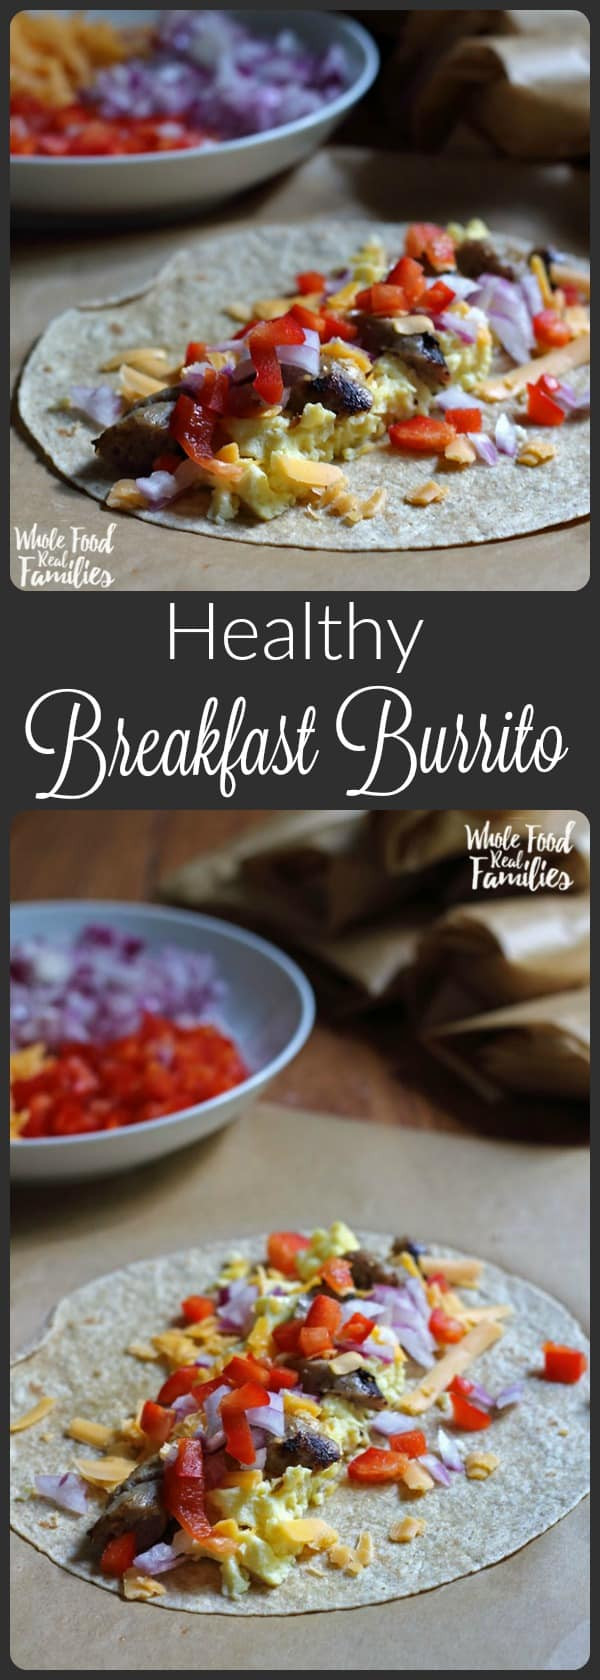 Healthy Breakfast Burrito
 Healthy Breakfast Burritos